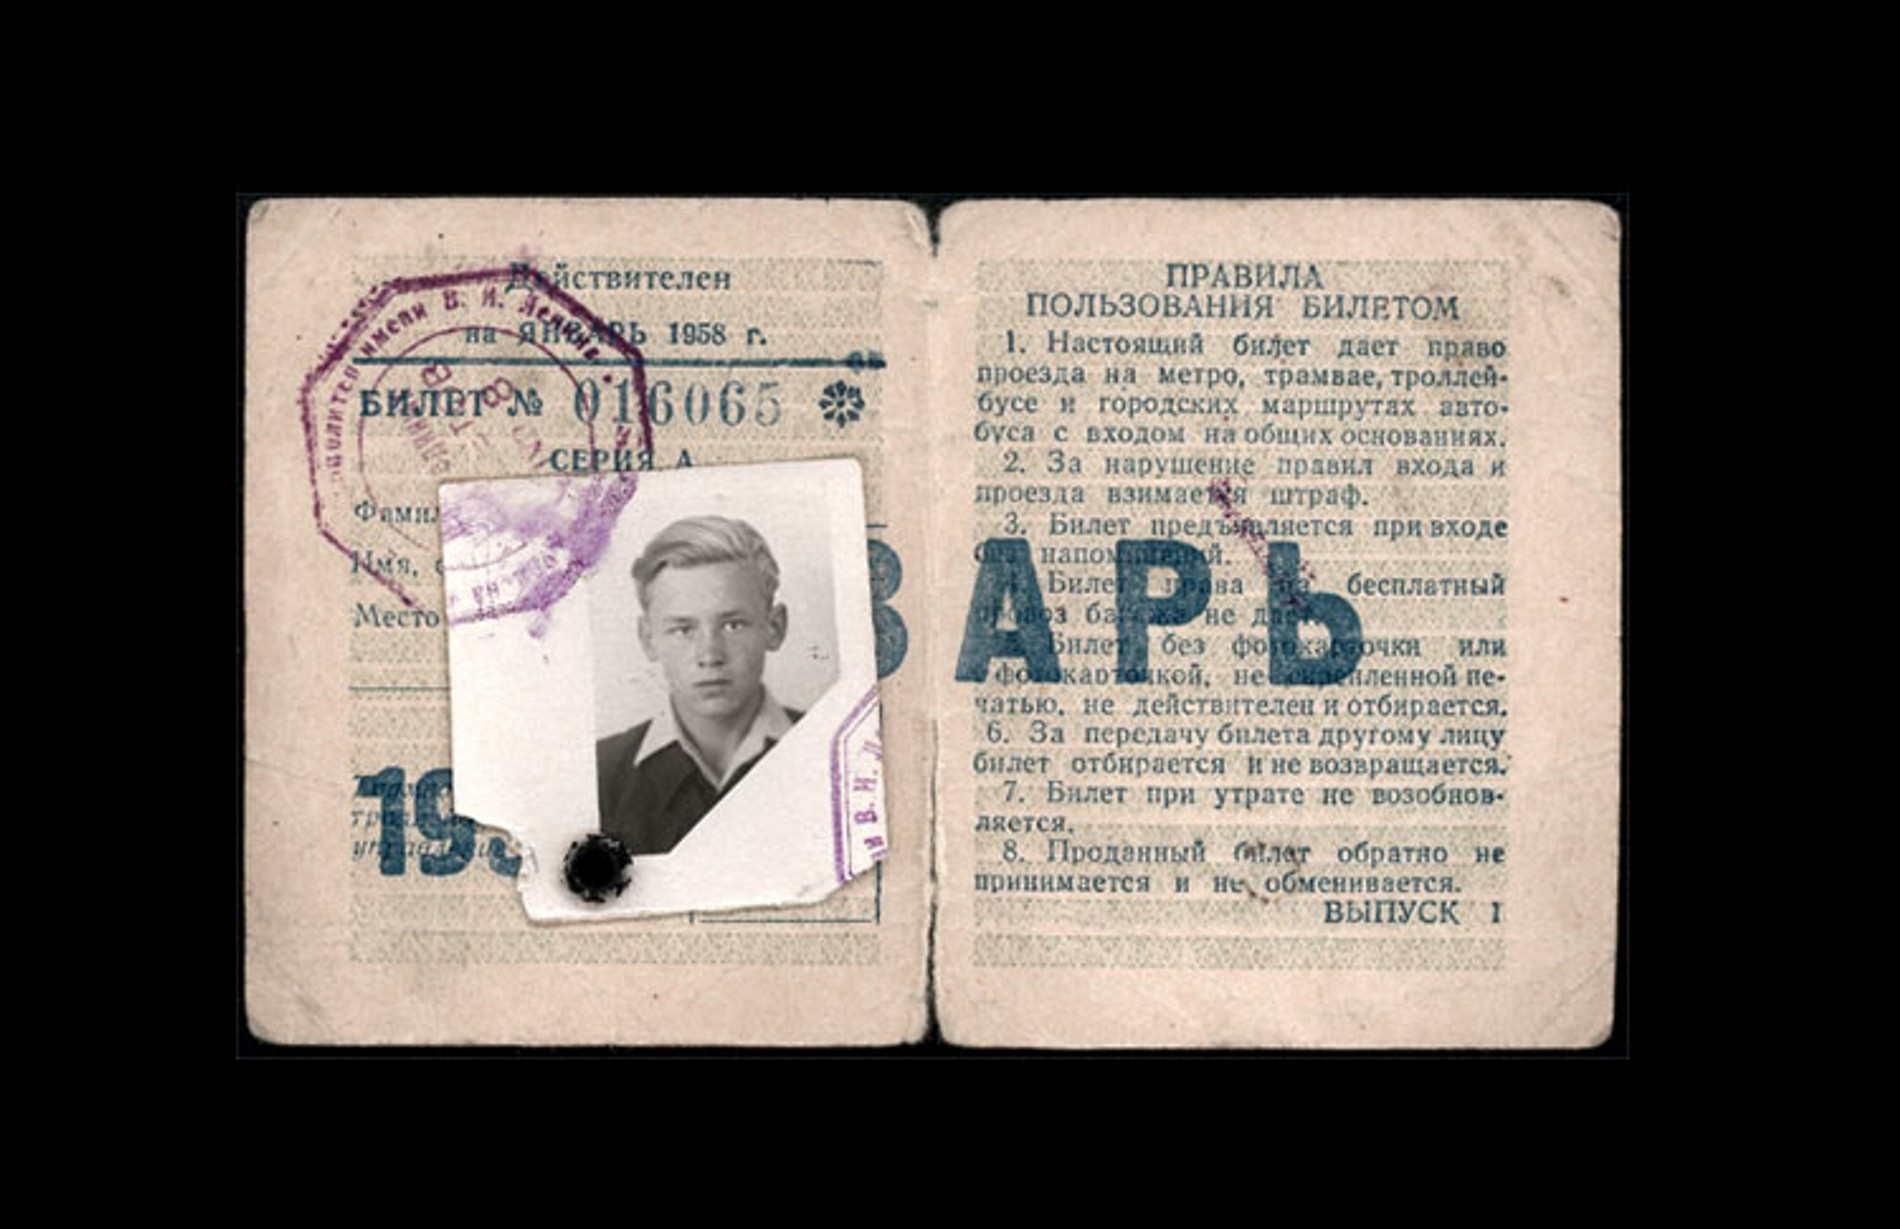 Единый проездной билет 1950-х гг.
Источник: metro.ru